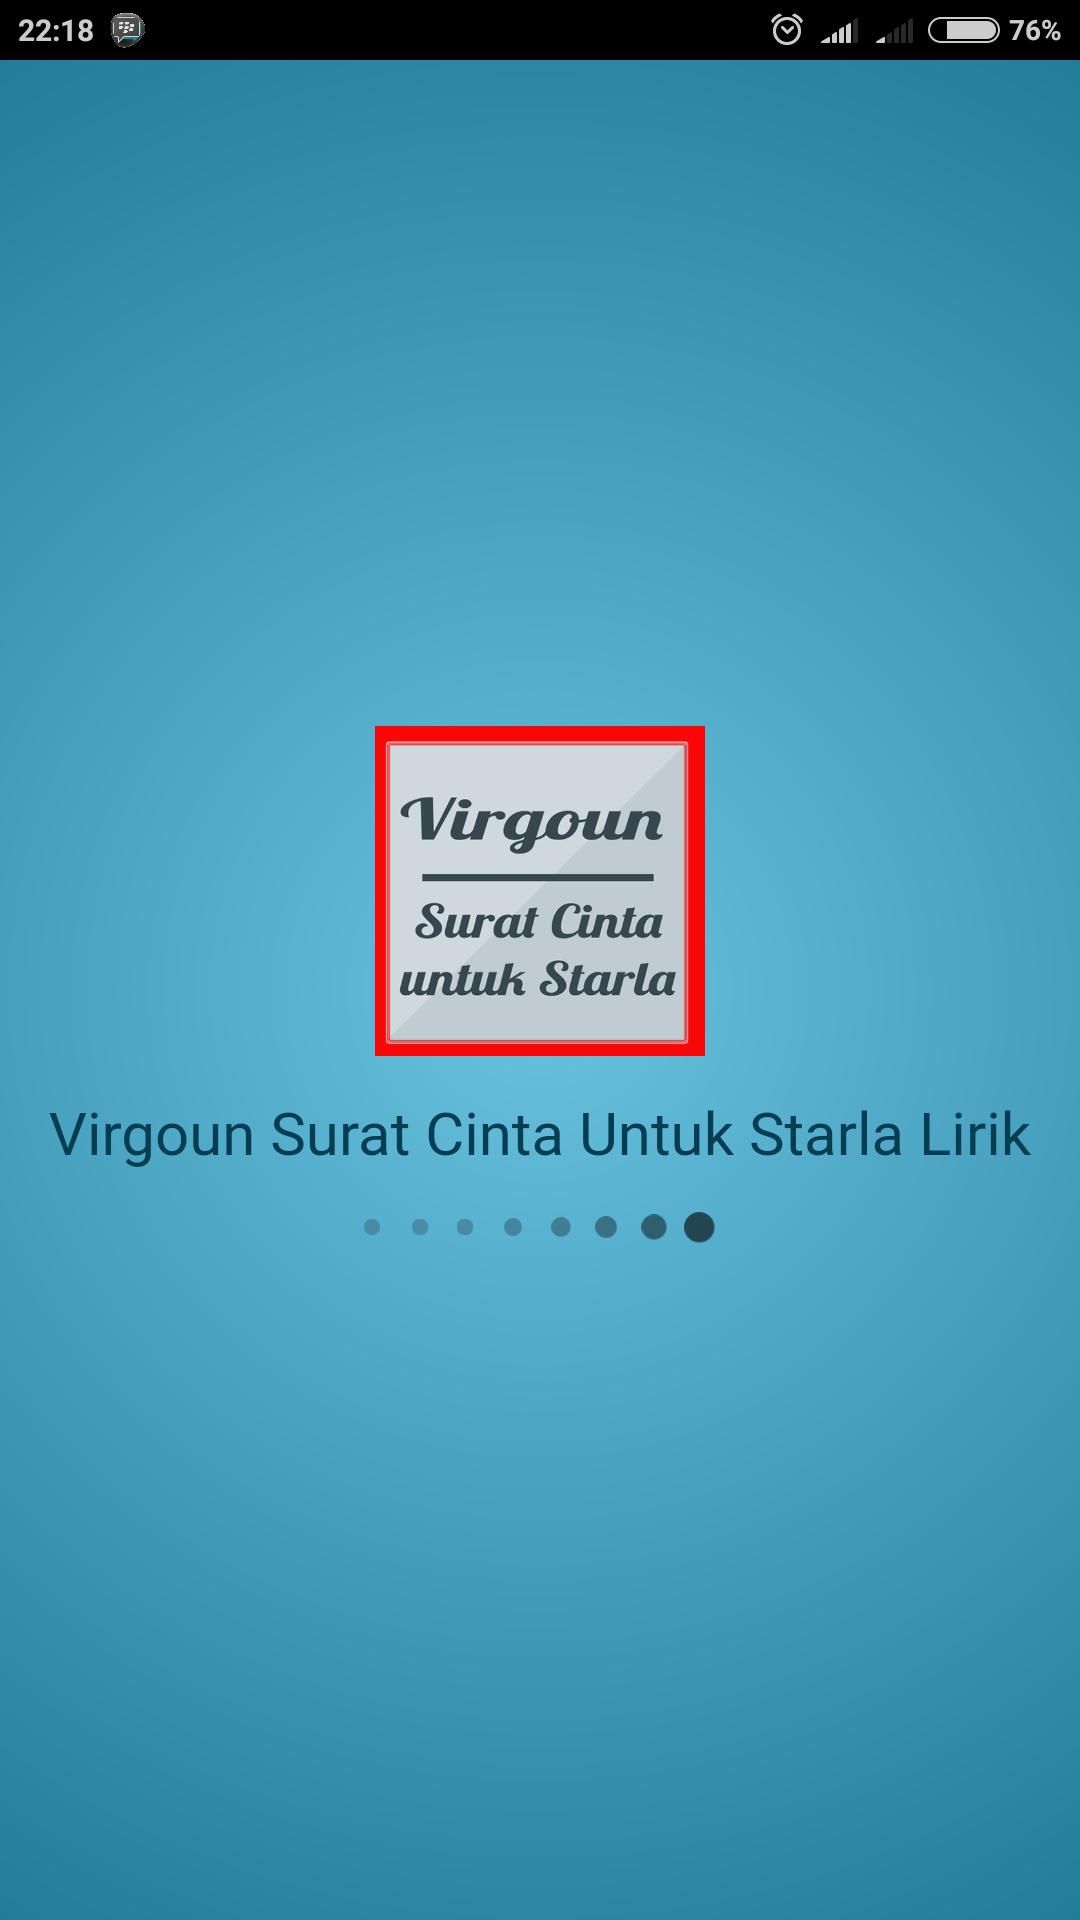 Lirik Lagu Virgoun Surat Cinta Untuk Starla For Android